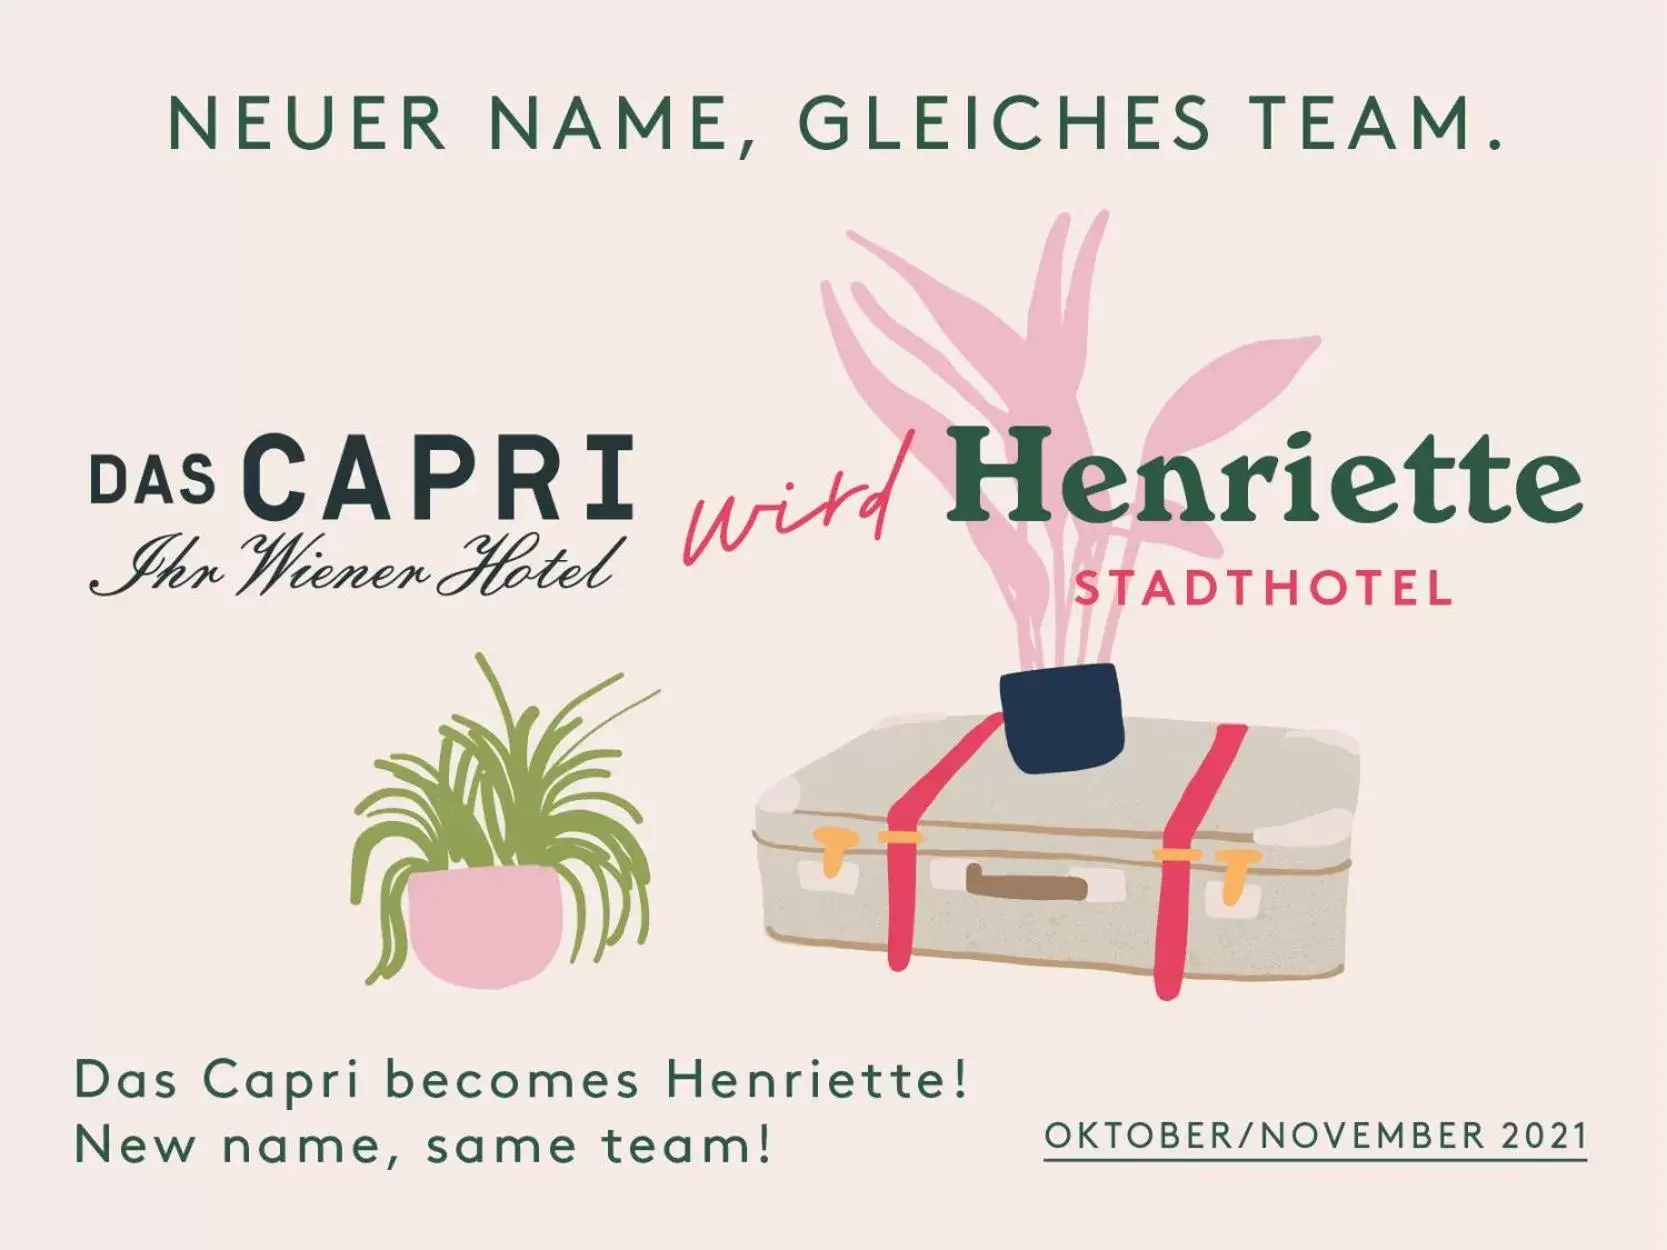 Logo/Certificate/Sign in Henriette Stadthotel Vienna